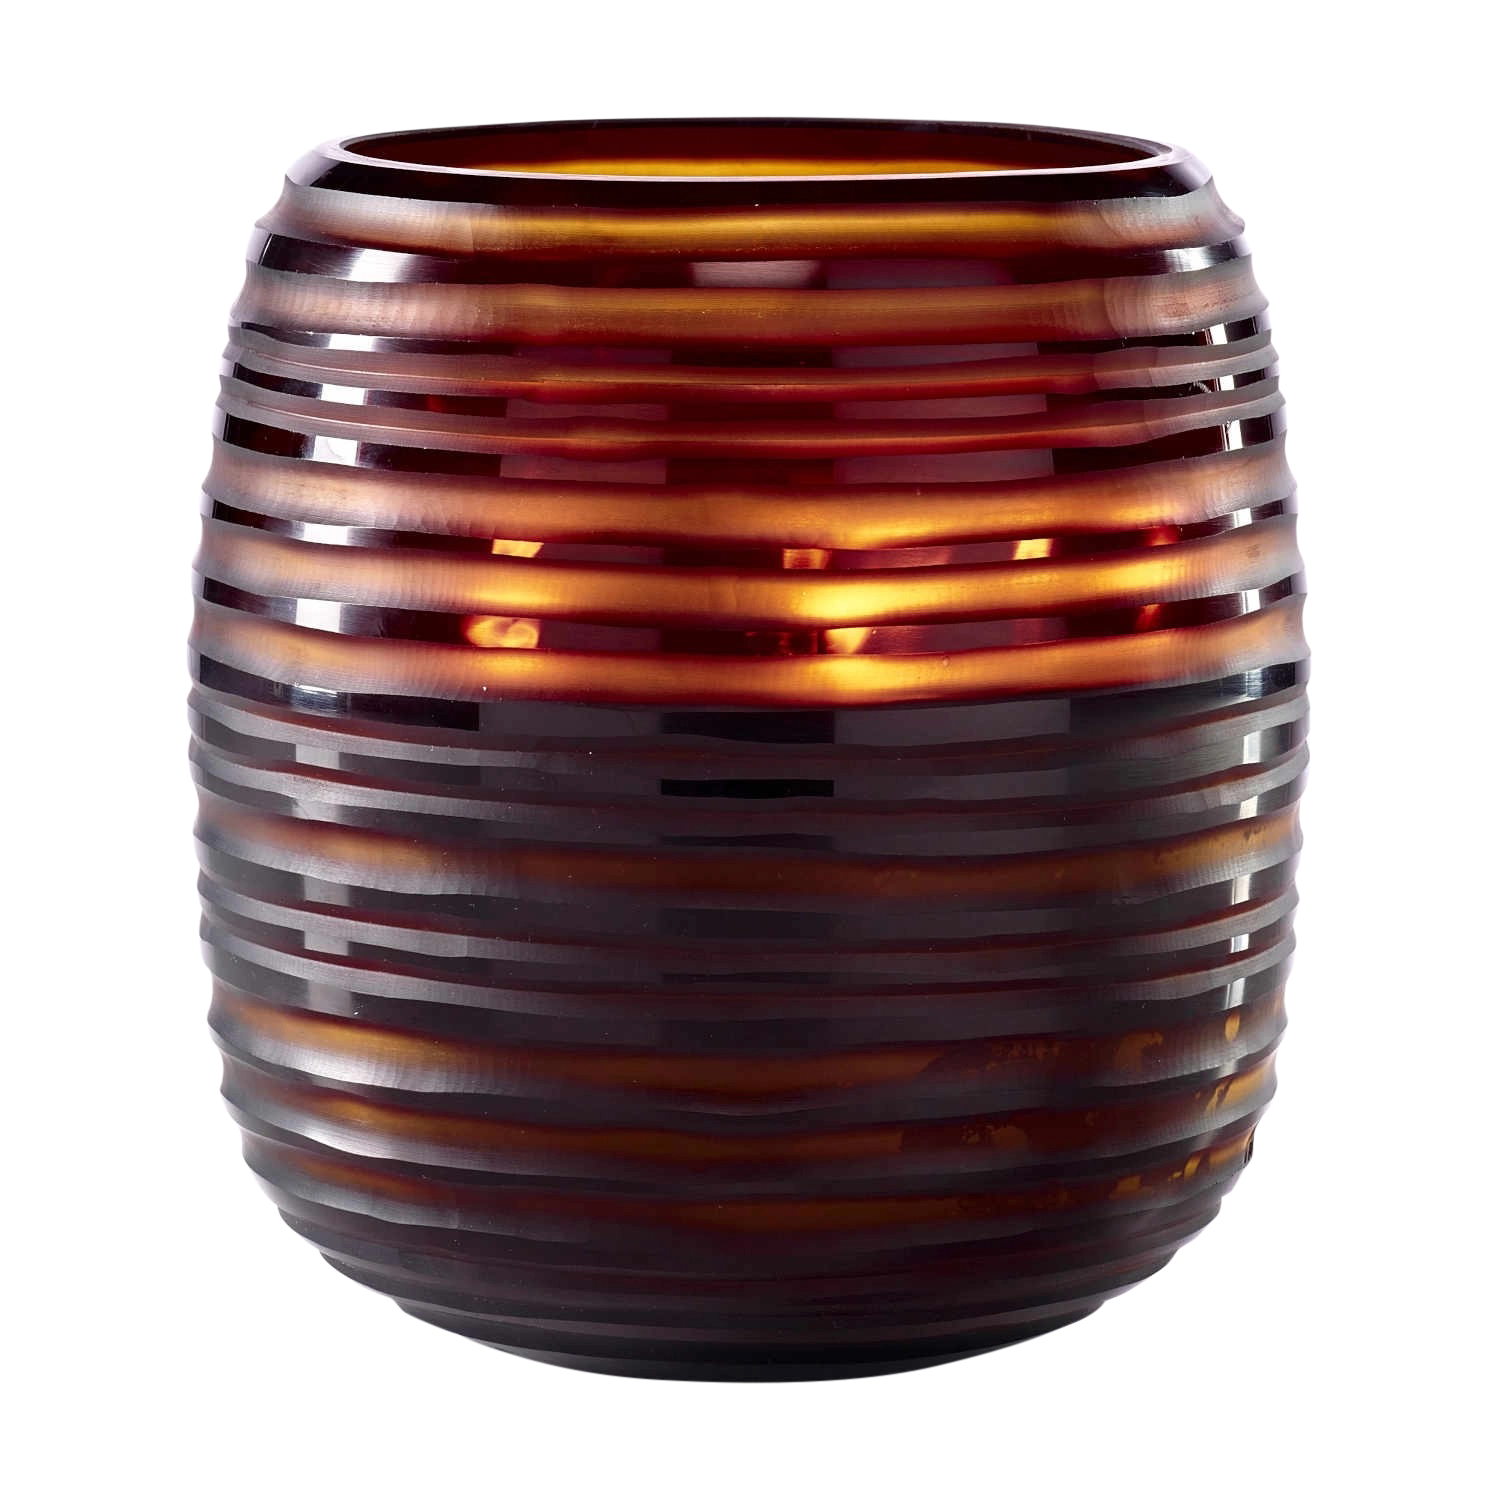 Sphere Duftkerze, Farbe amber, Grösse b. 19 x h. 20 cm, Duft zanzibar von ONNO Collection